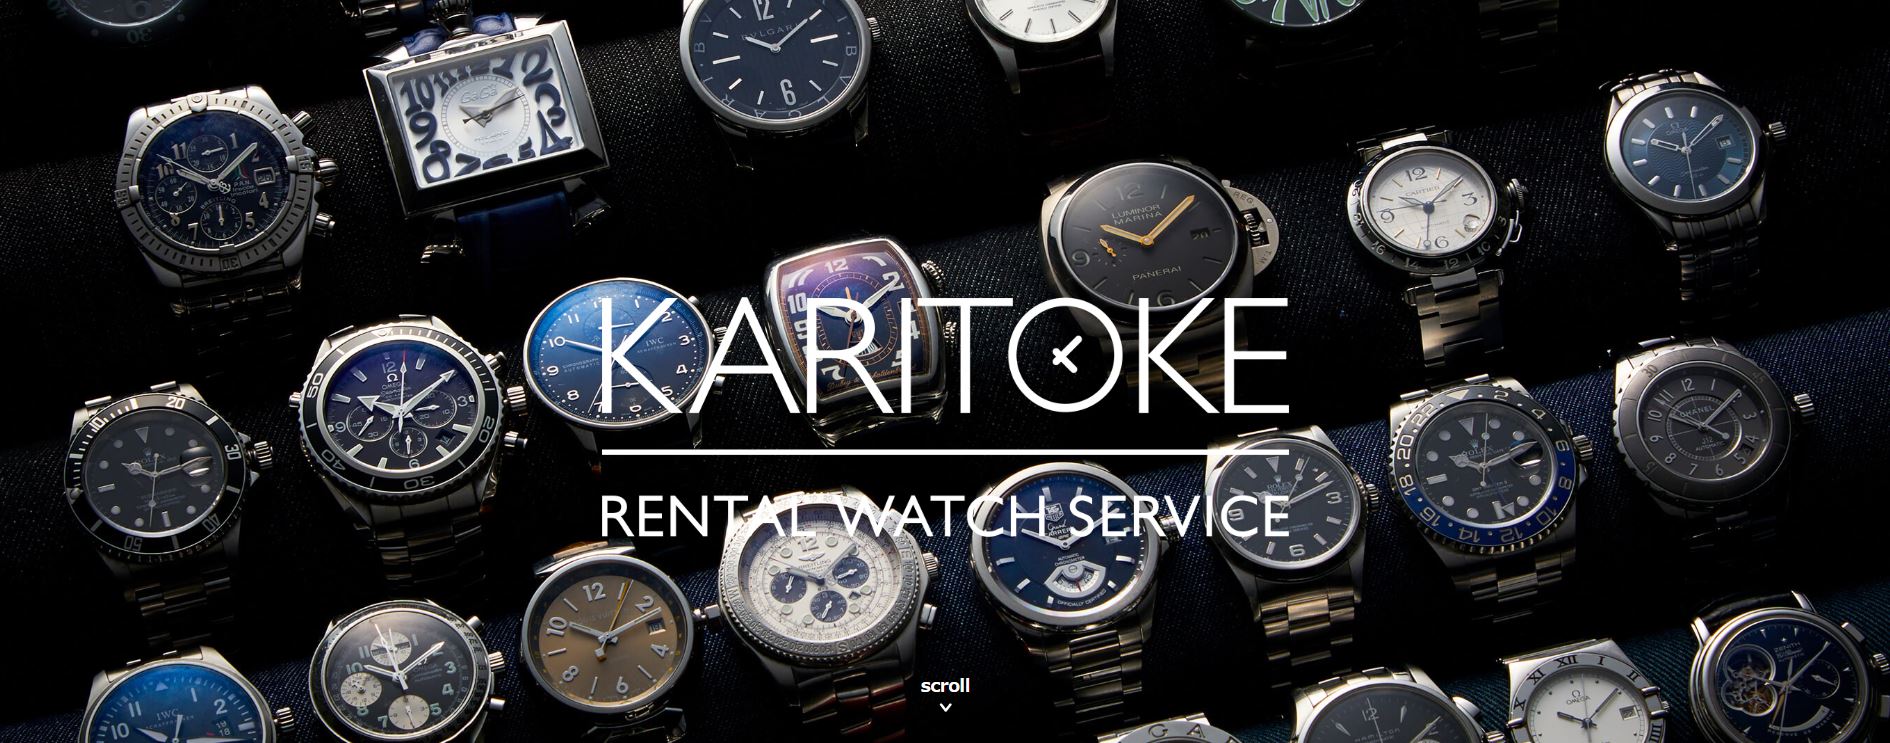 腕時計レンタルサービス「カリトケ」の魅力